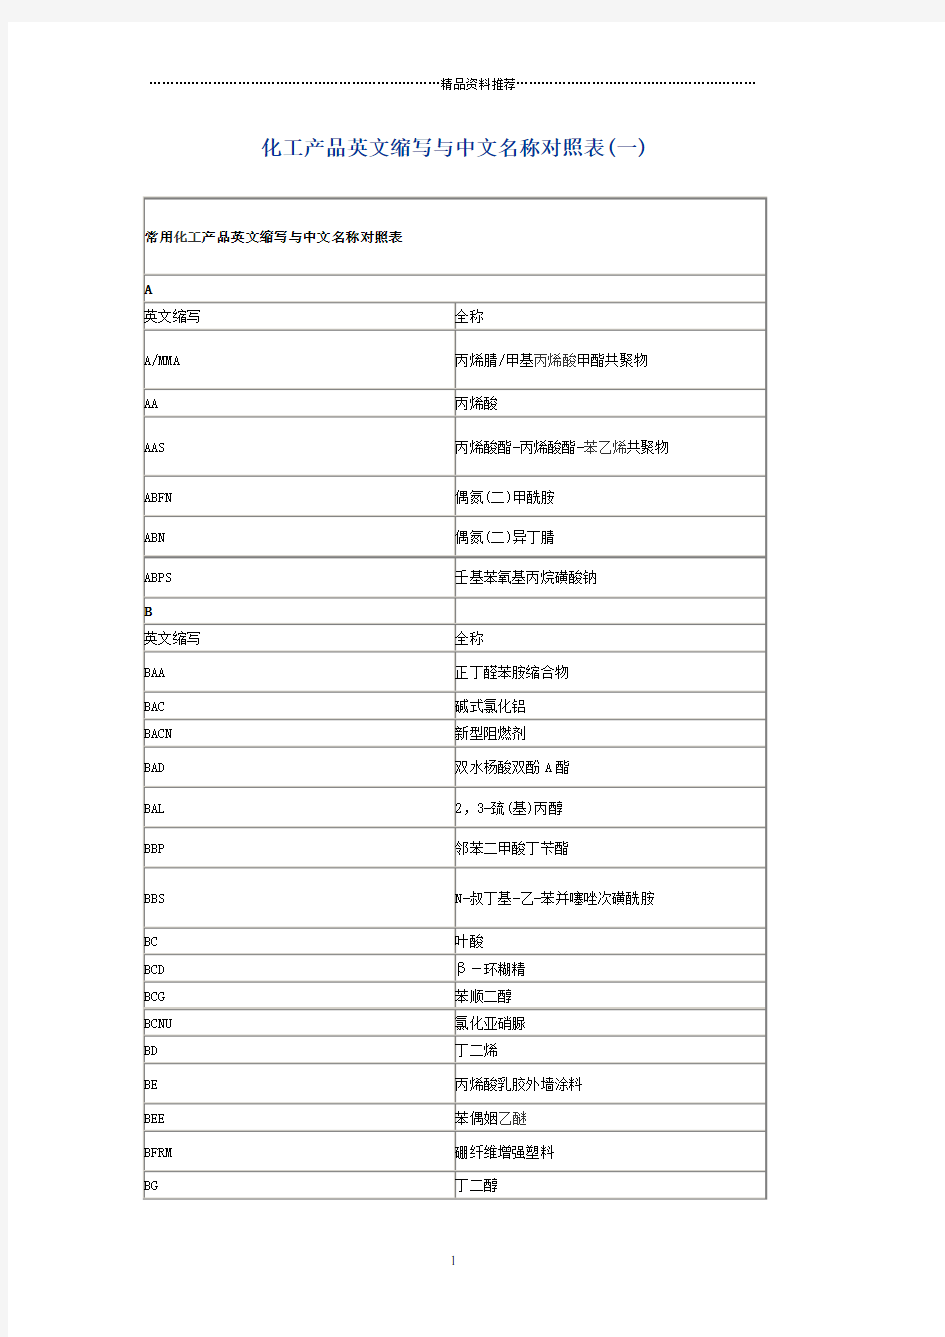 化工产品英文缩写与中文名称对照表